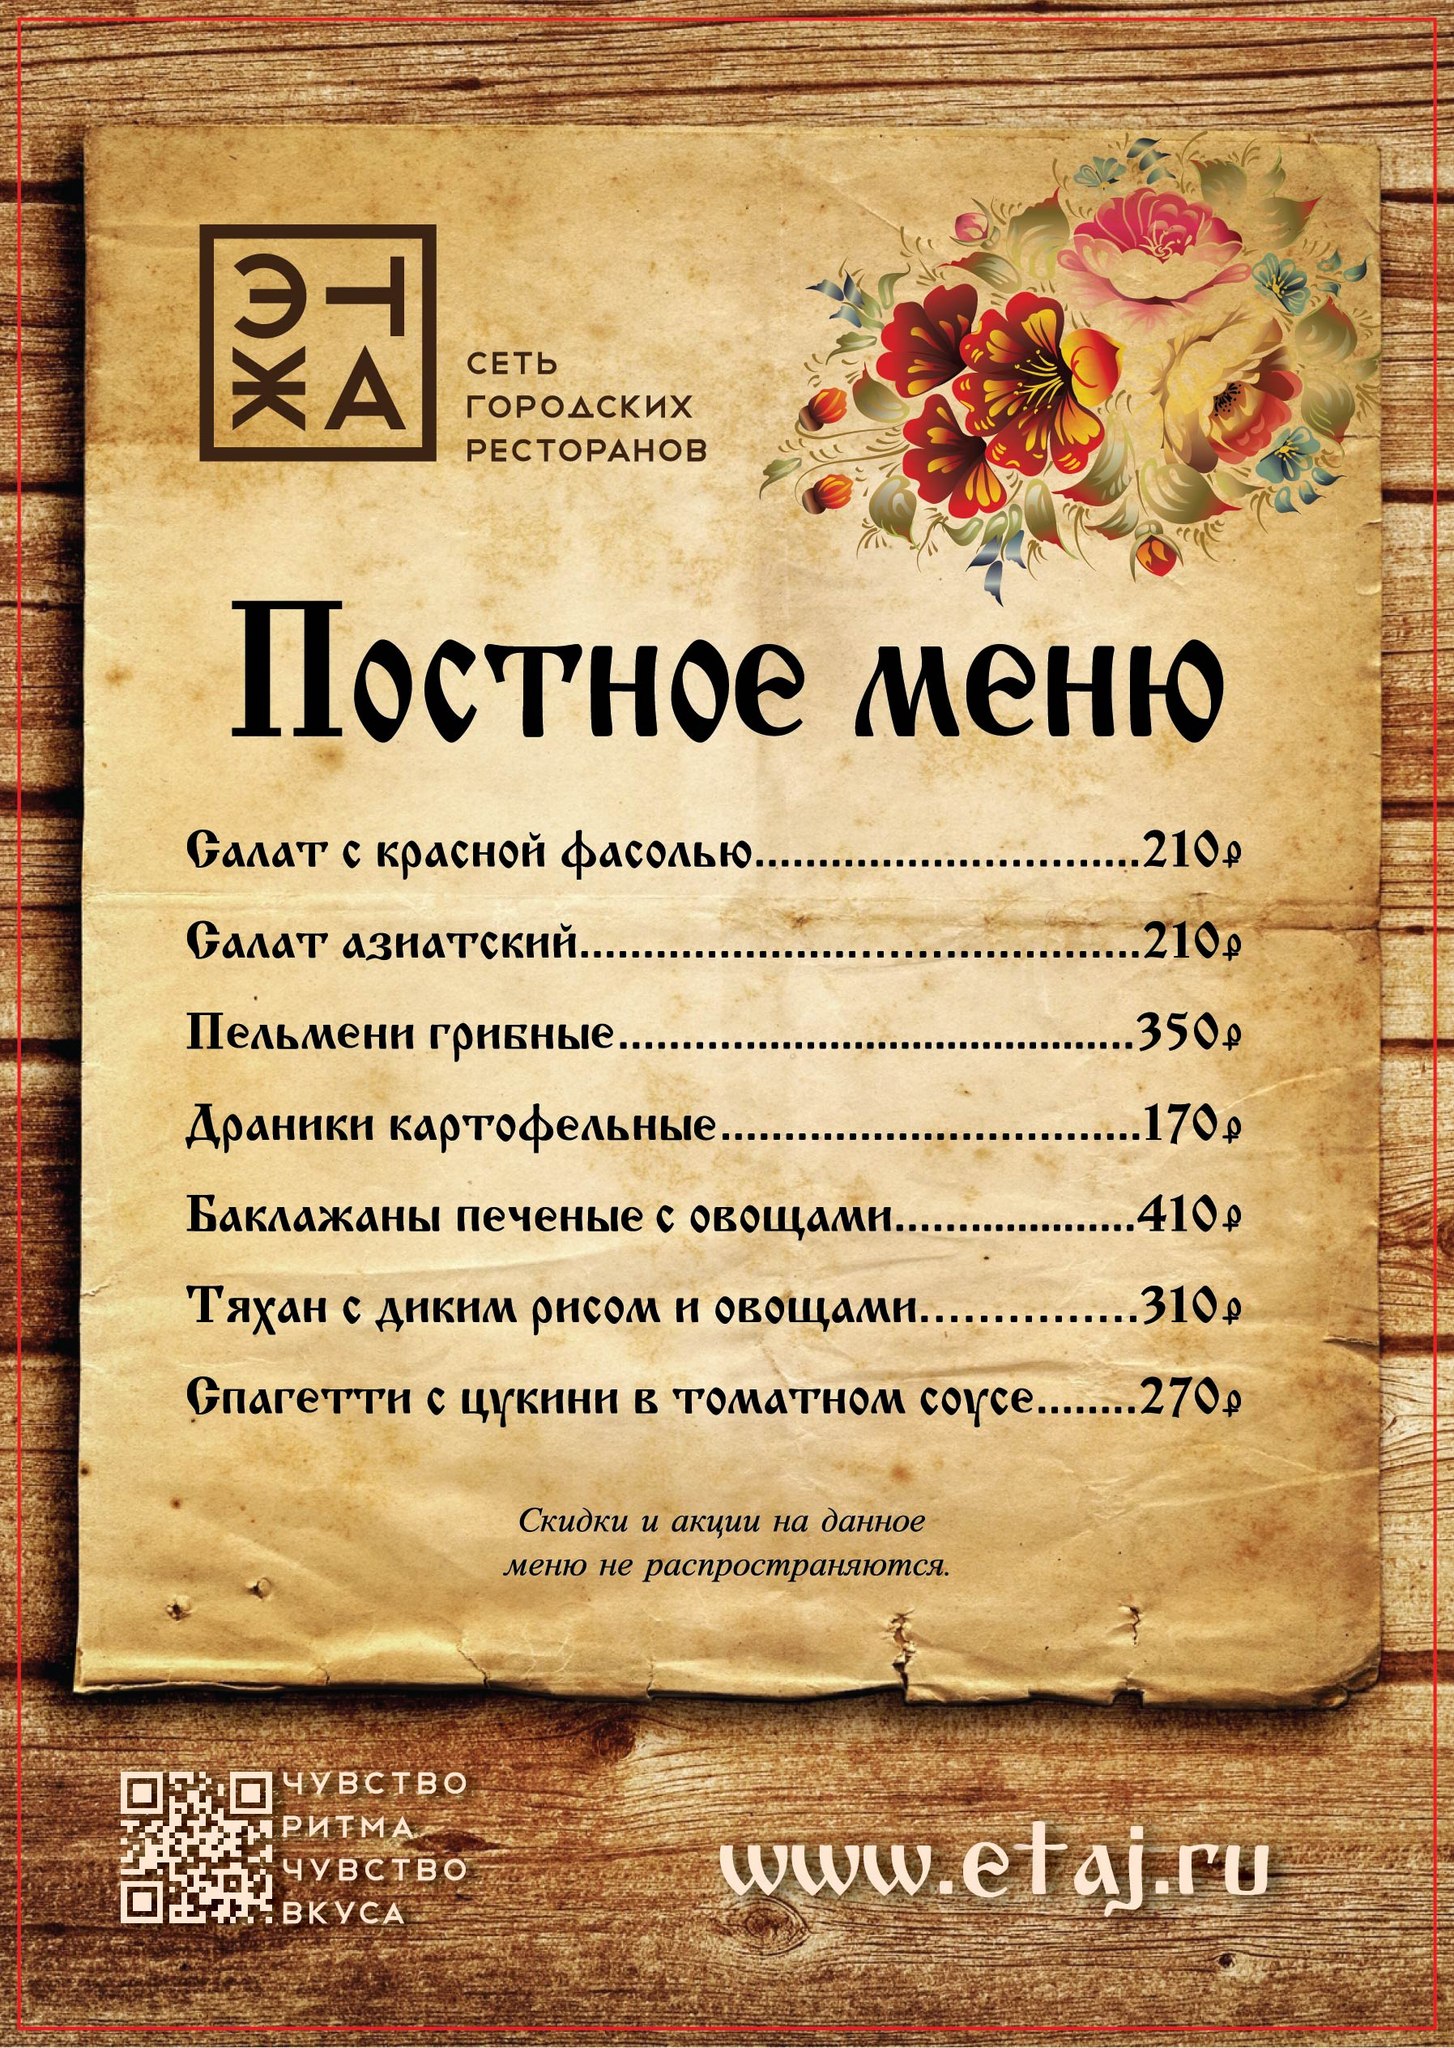 меню для ресторана русской кухни